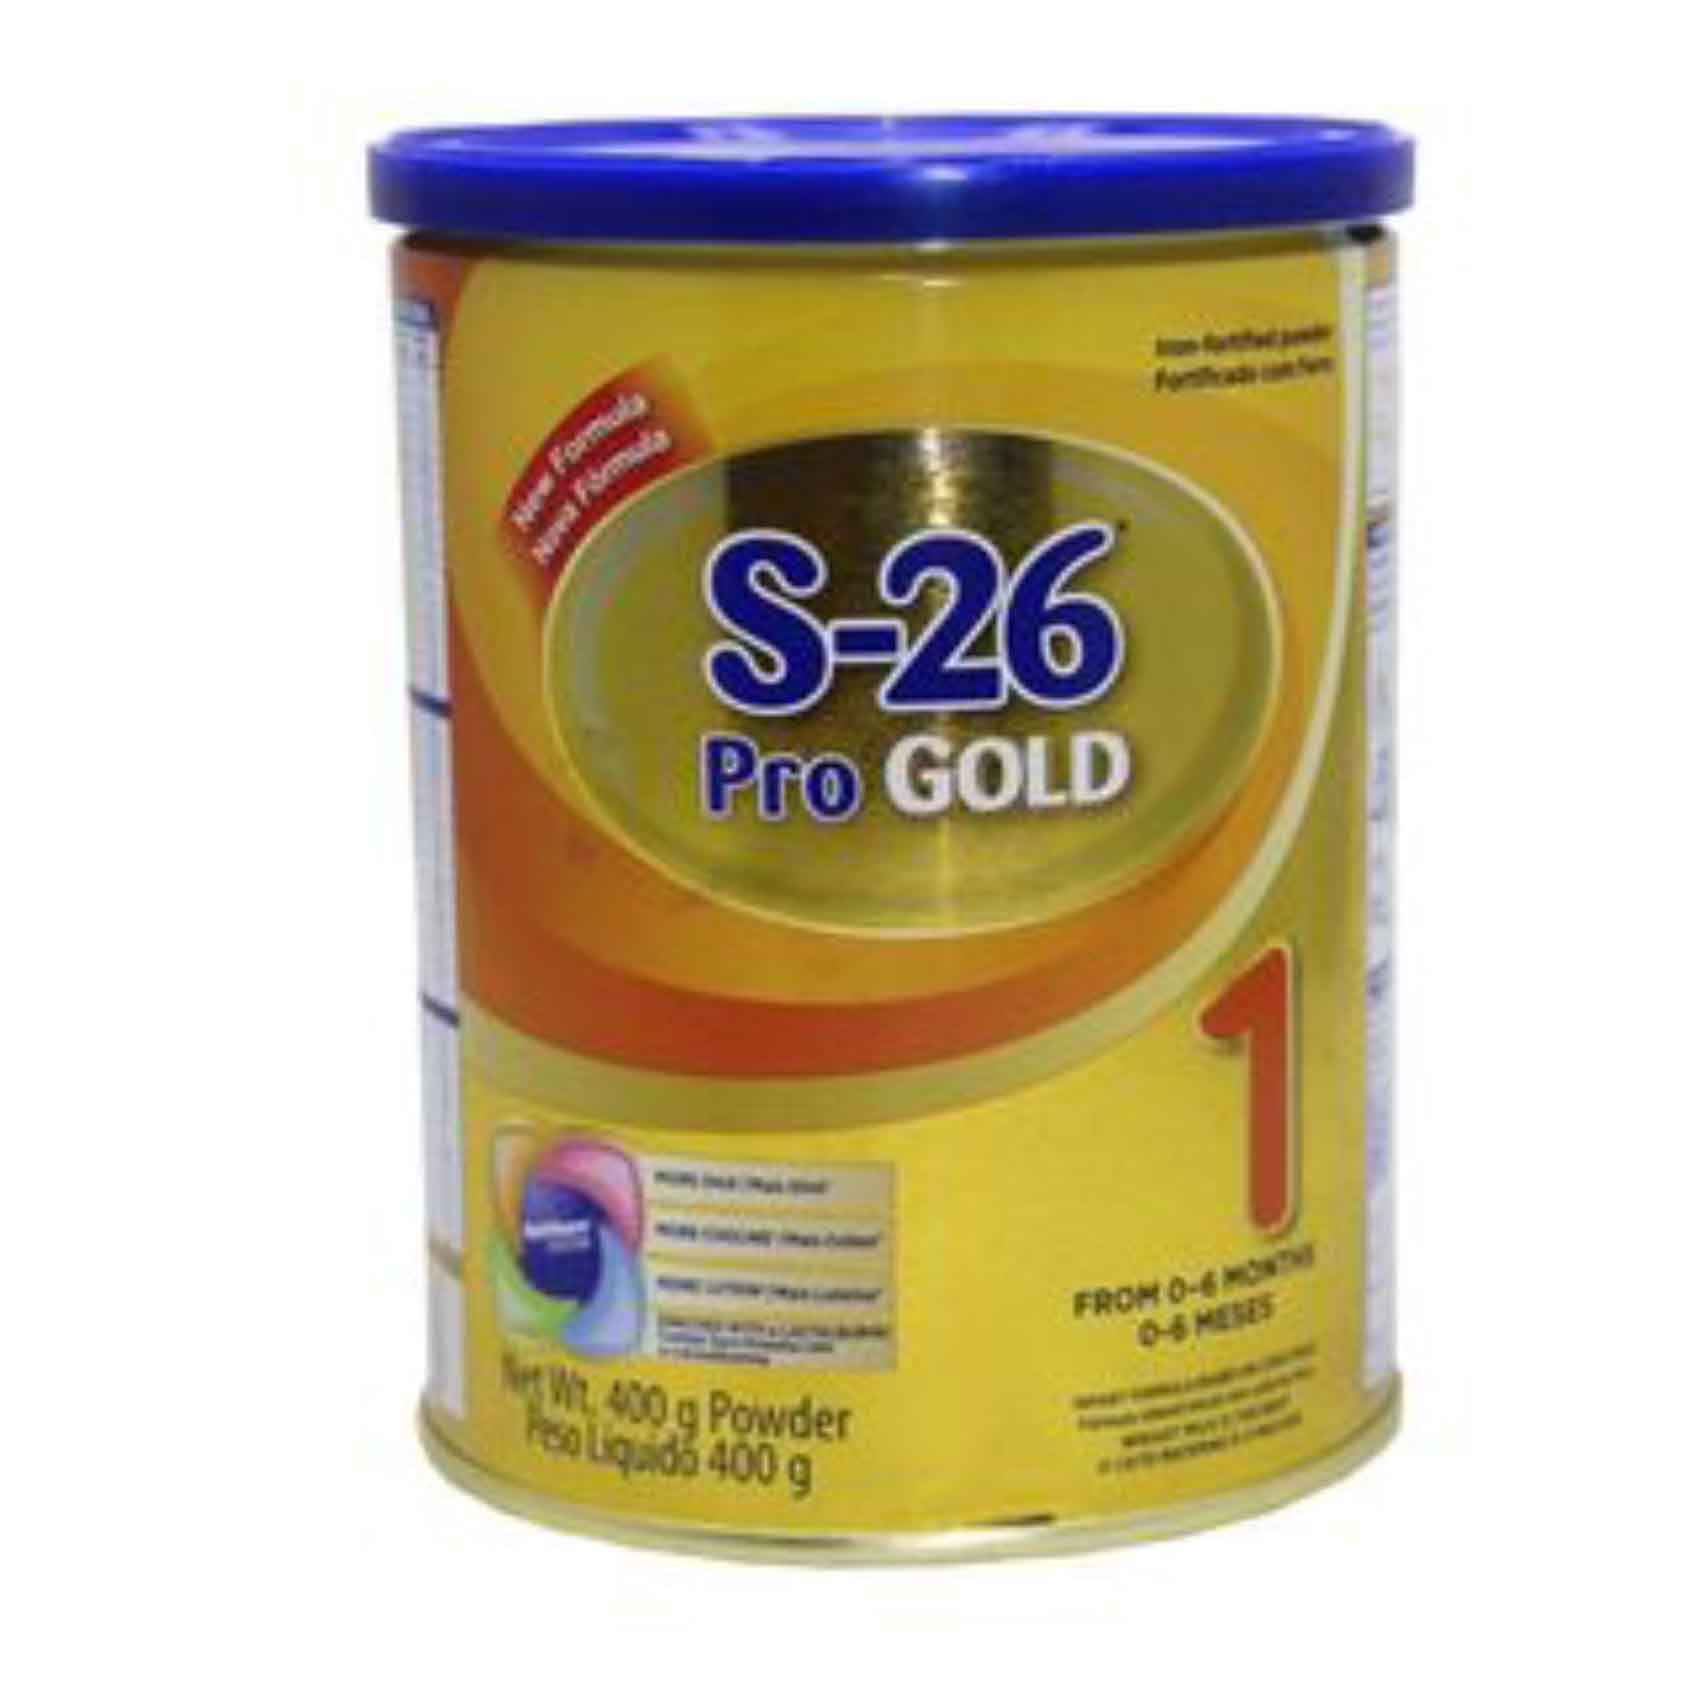 Nova S26 Pro Gold Infant Formula Milk Powder 400g